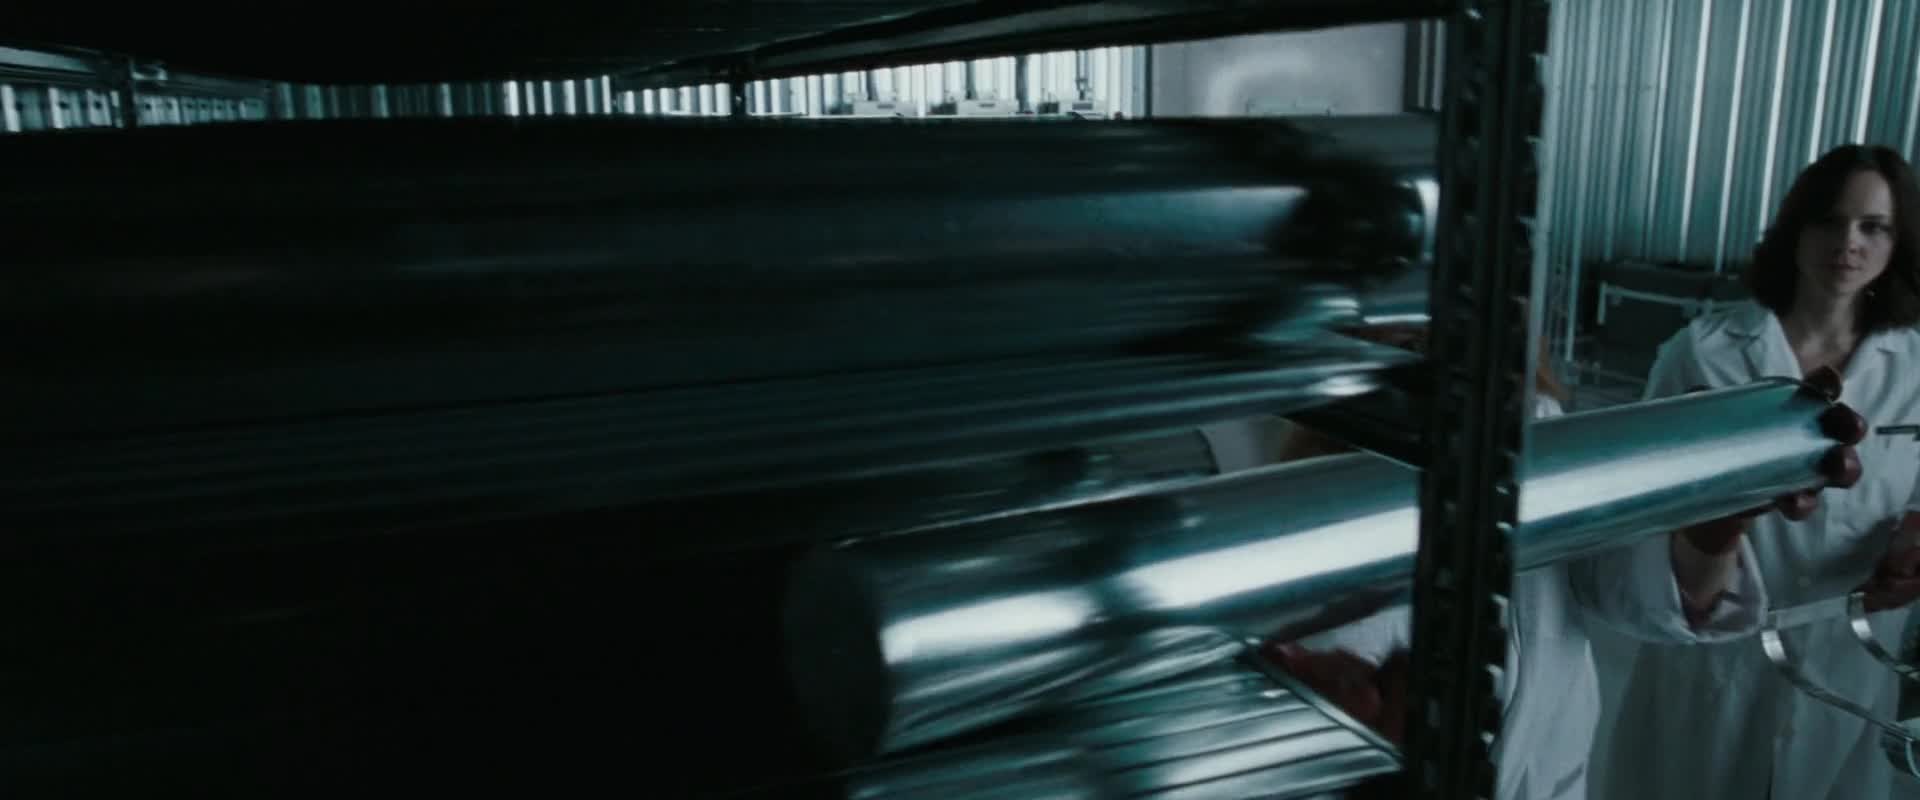 Bílá smrt (Kate Beckinsale Gabriel Macht 2009 Thriller Mysteriózní Akční Krimi 1080p ) Cz dabing mkv